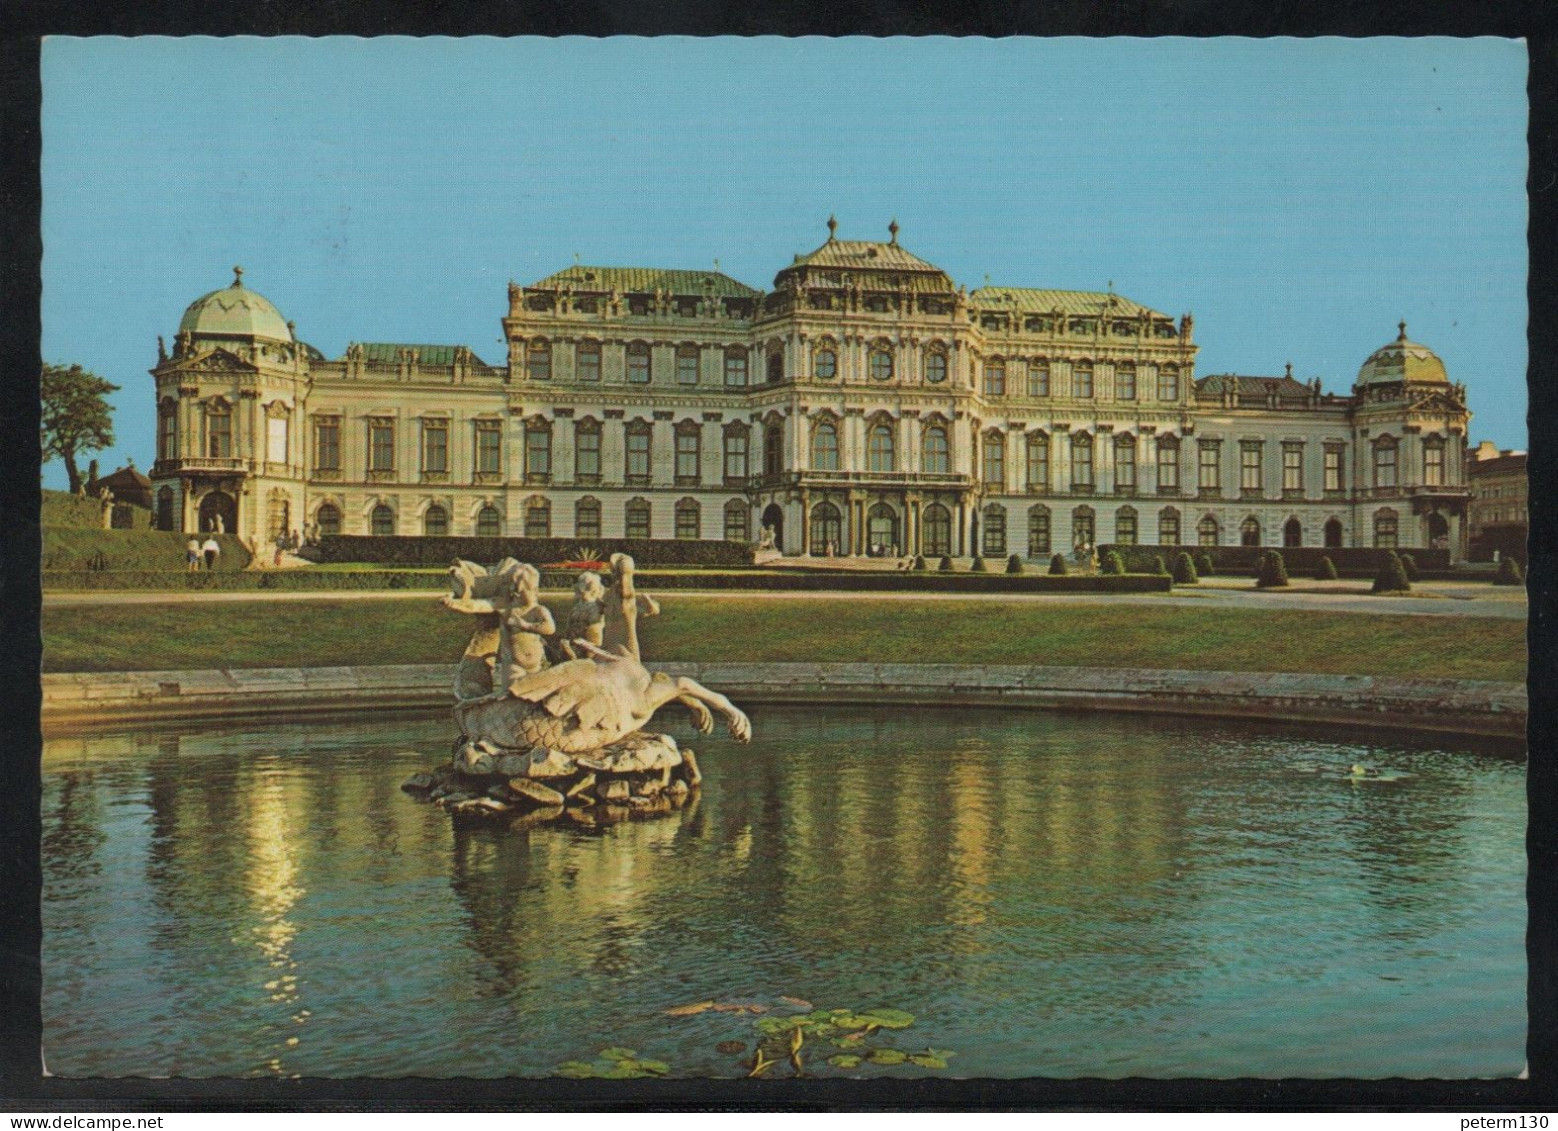 H019 - Wien, Belvedere, 1983 - Belvedère